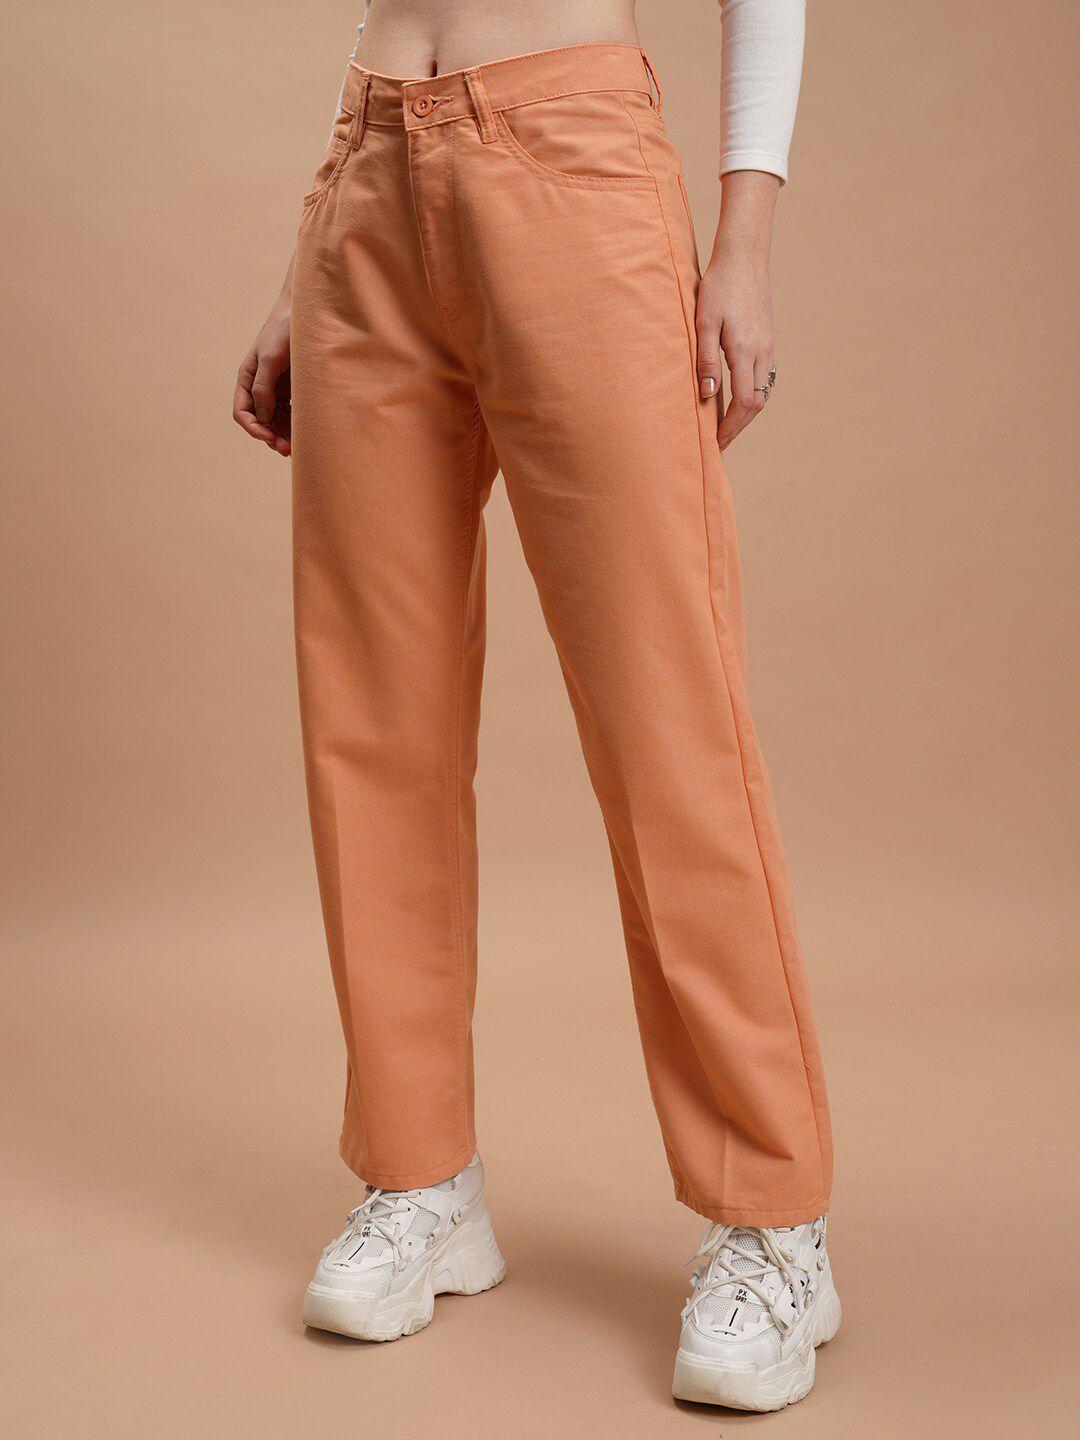 tokyo talkies women orange flared trousers